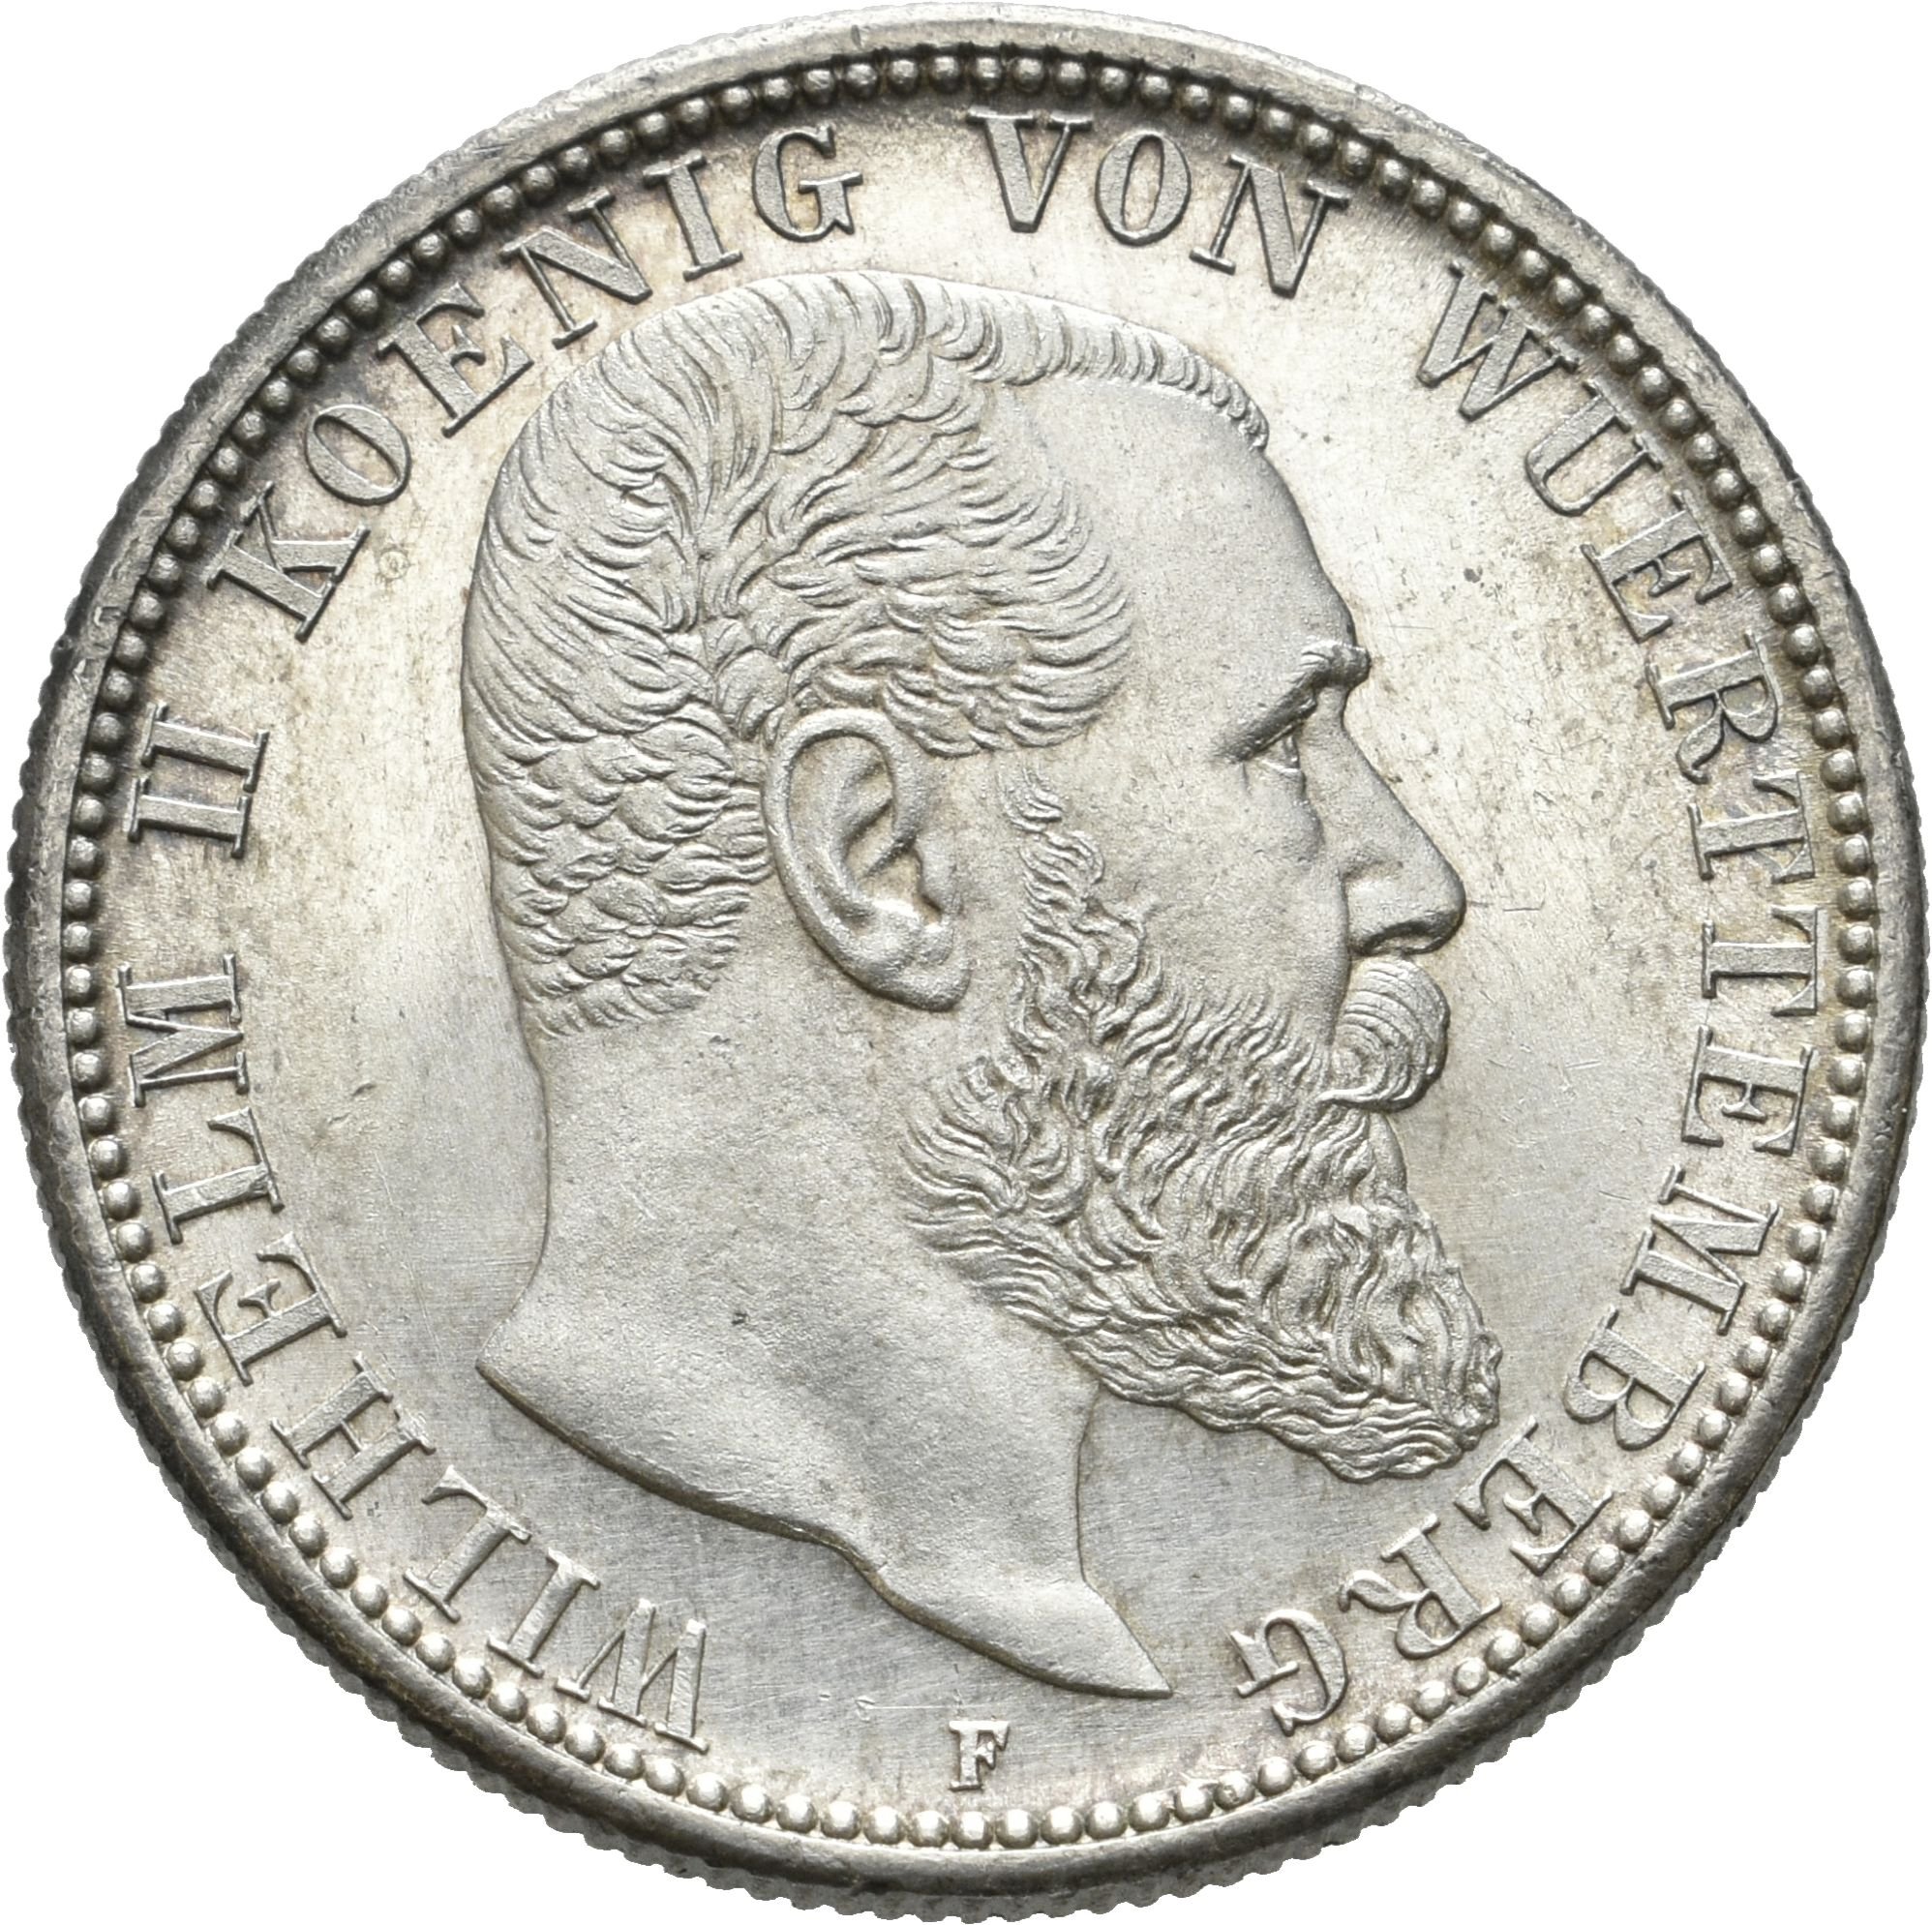 2 Mark von König Wilhelm II. von Württemberg von 1908 (Münzsammlung des Sparkassenverbands Baden-Württemberg CC BY-NC-SA)